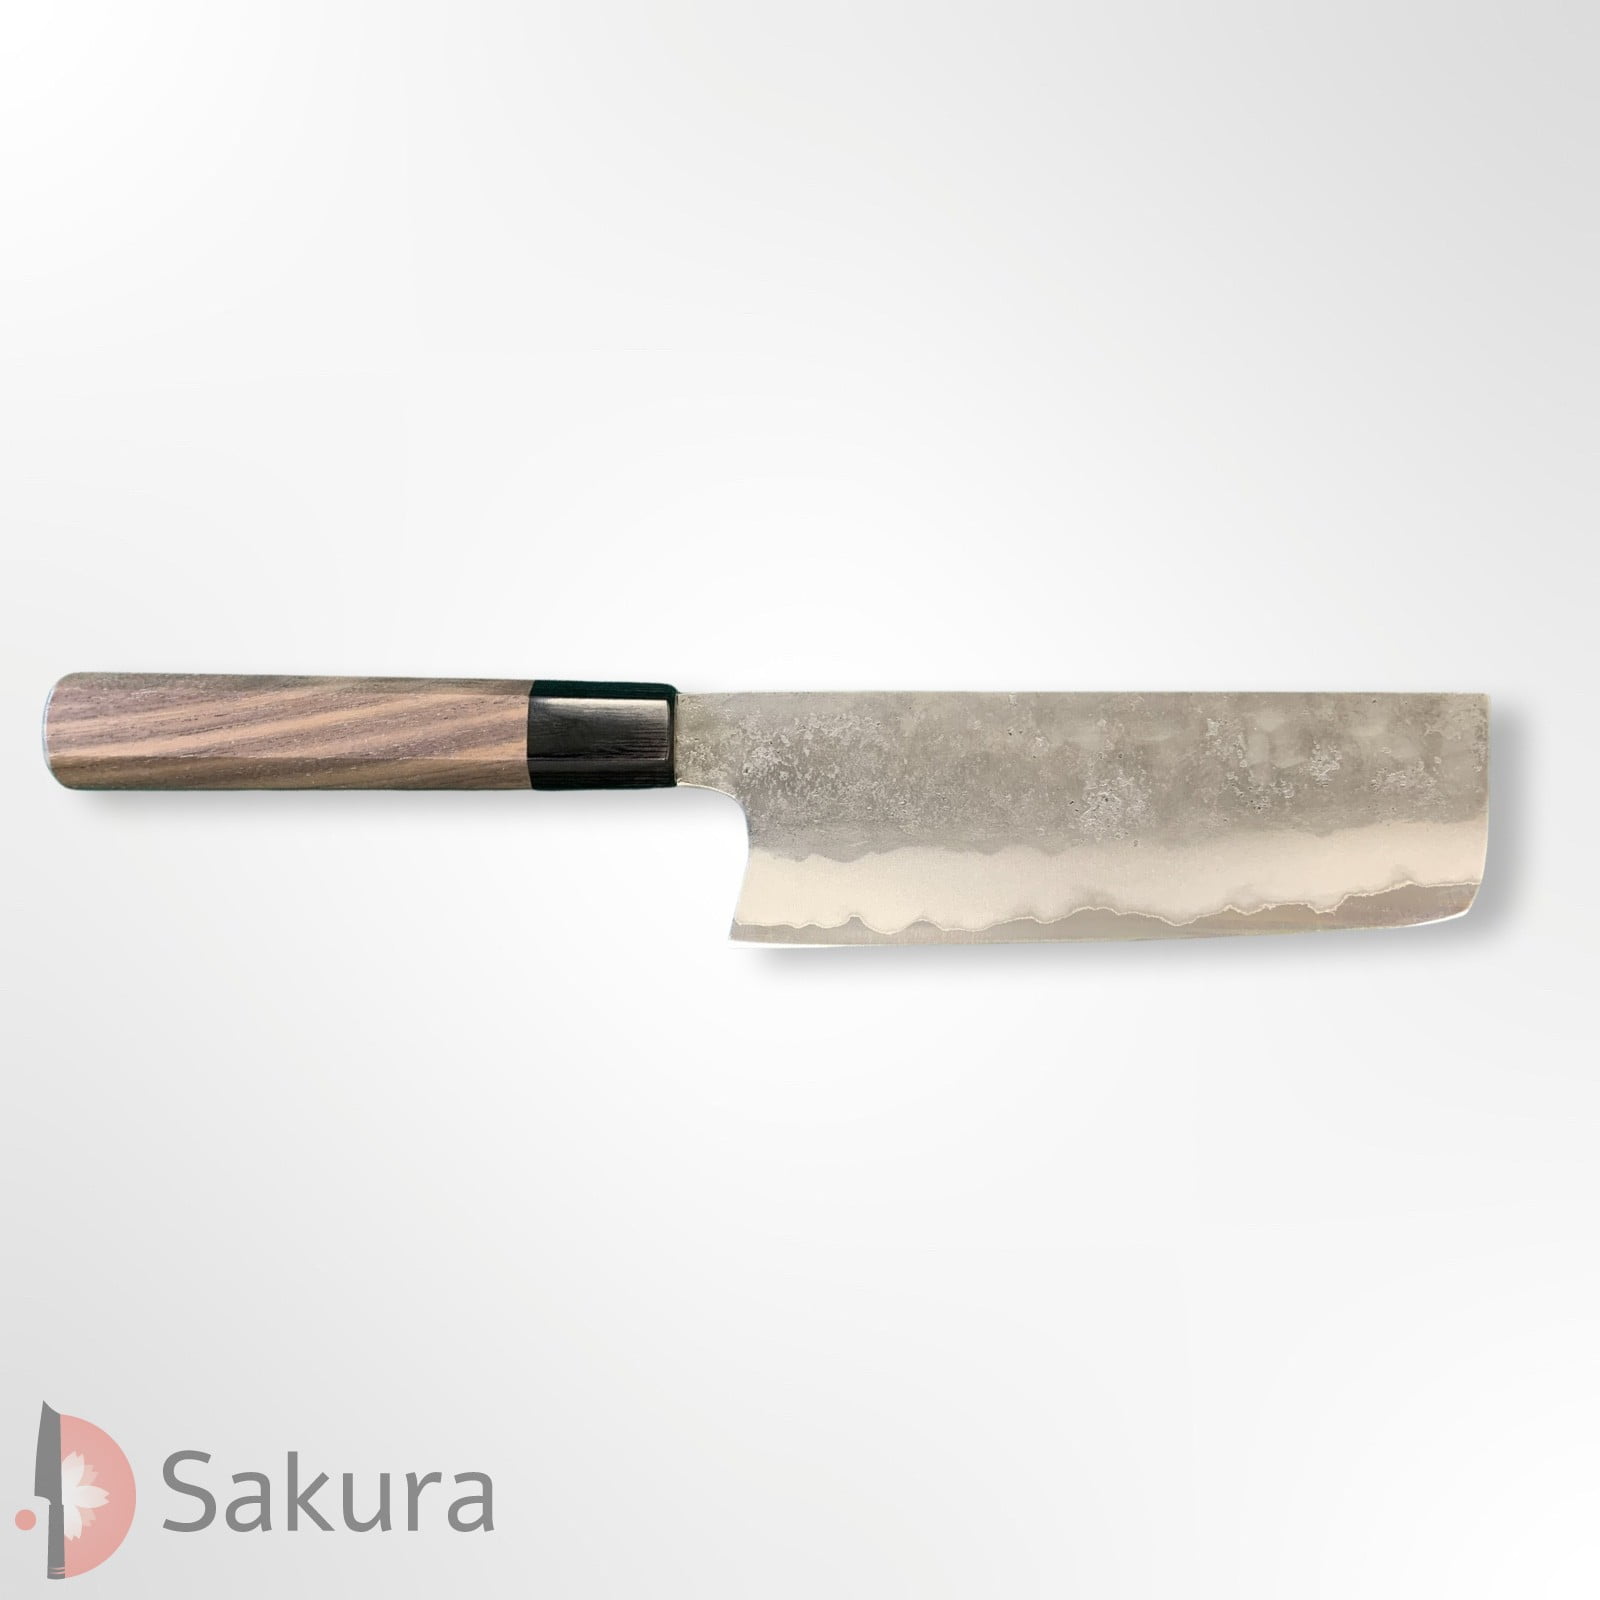 סכין ירקות נַקִירִי 165מ״מ מחושלת בעבודת יד 3 שכבות: פלדת פחמן יפנית מתקדמת מסוג Aogami#2 עטופה פלדת אל-חלד  גימור מט חיספוס טבעי מאצוברה יפן – SKMATSTKKNBN16542